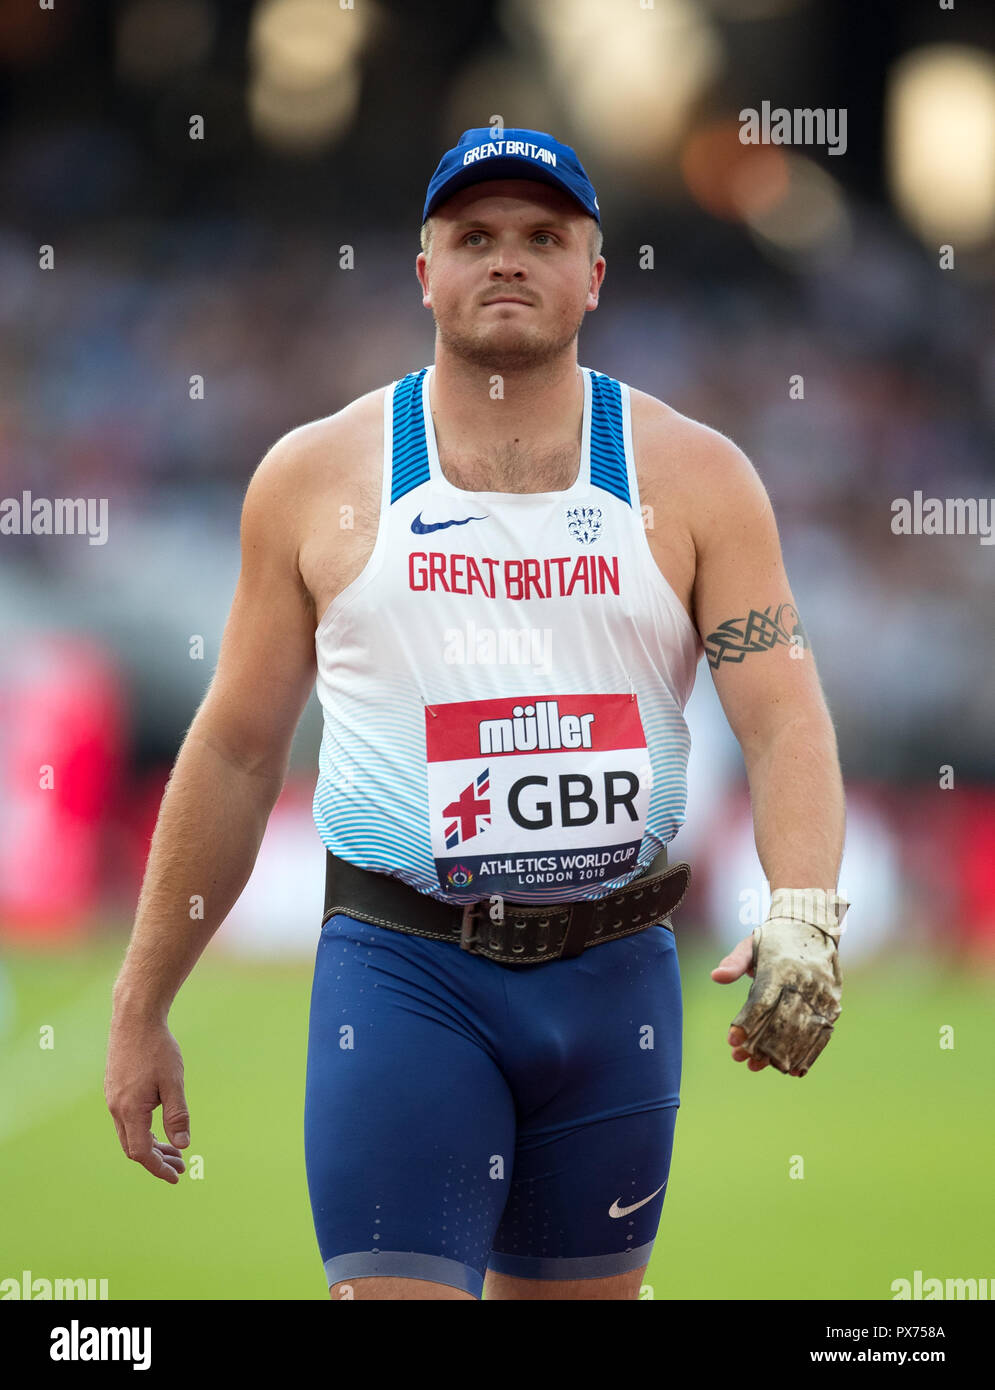 Nick Miller von GBR (Hammer Throw) Während der Leichtathletik WM 2018 bei den Olympischen Park, London, England am 15. Juli 2018. Foto von Andy Rowland. Stockfoto